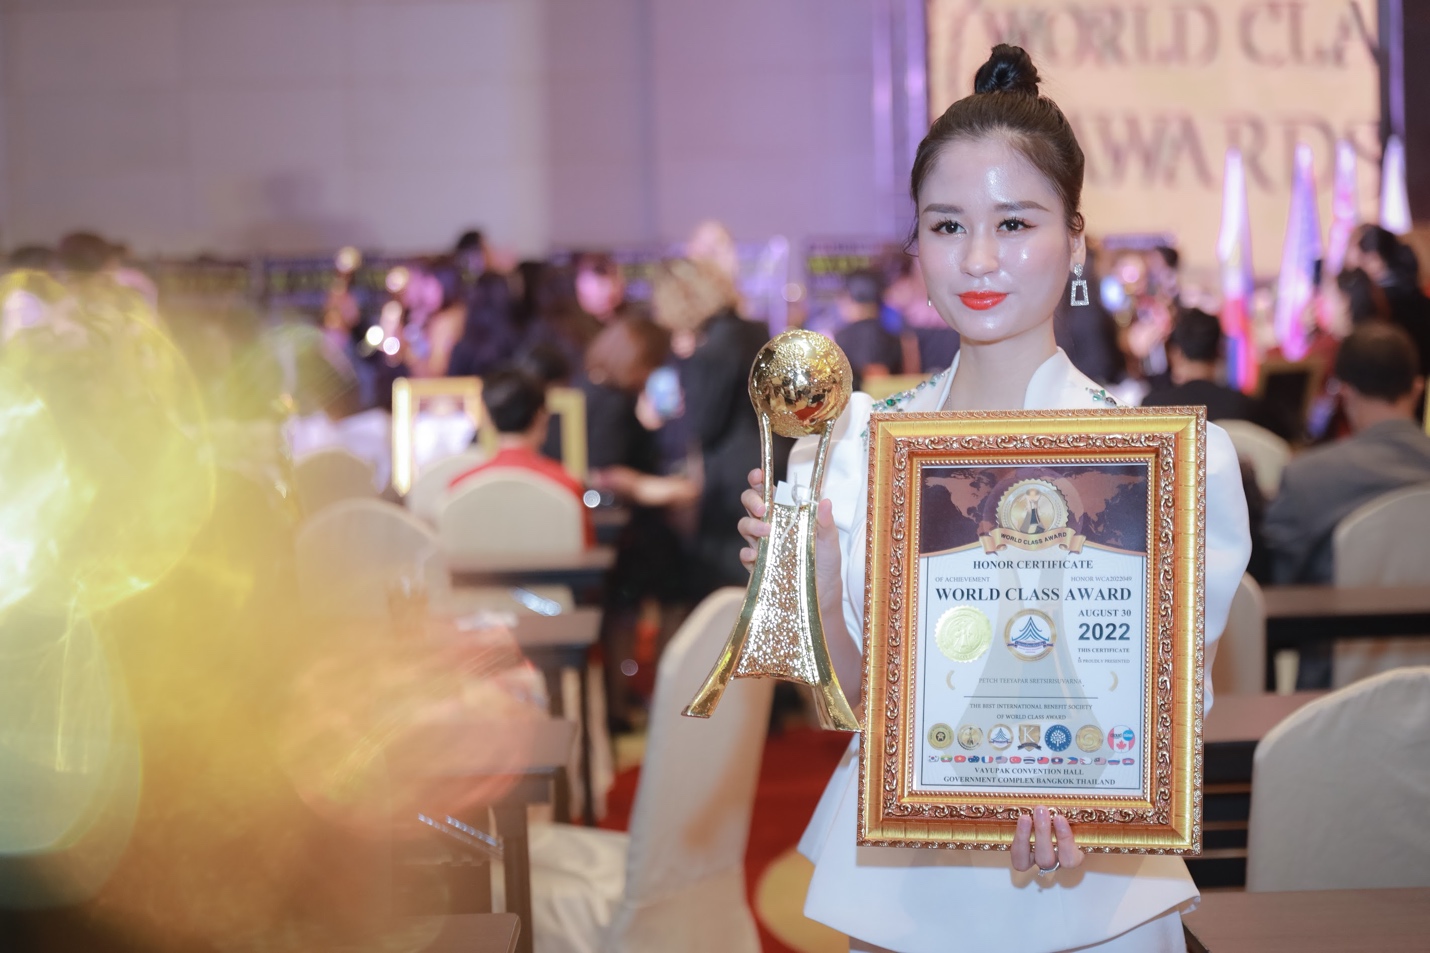 Thương hiệu Lurcinn nhận giải thưởng mỹ phẩm quốc tế tại Thái Lan 2022 - Ảnh 2.